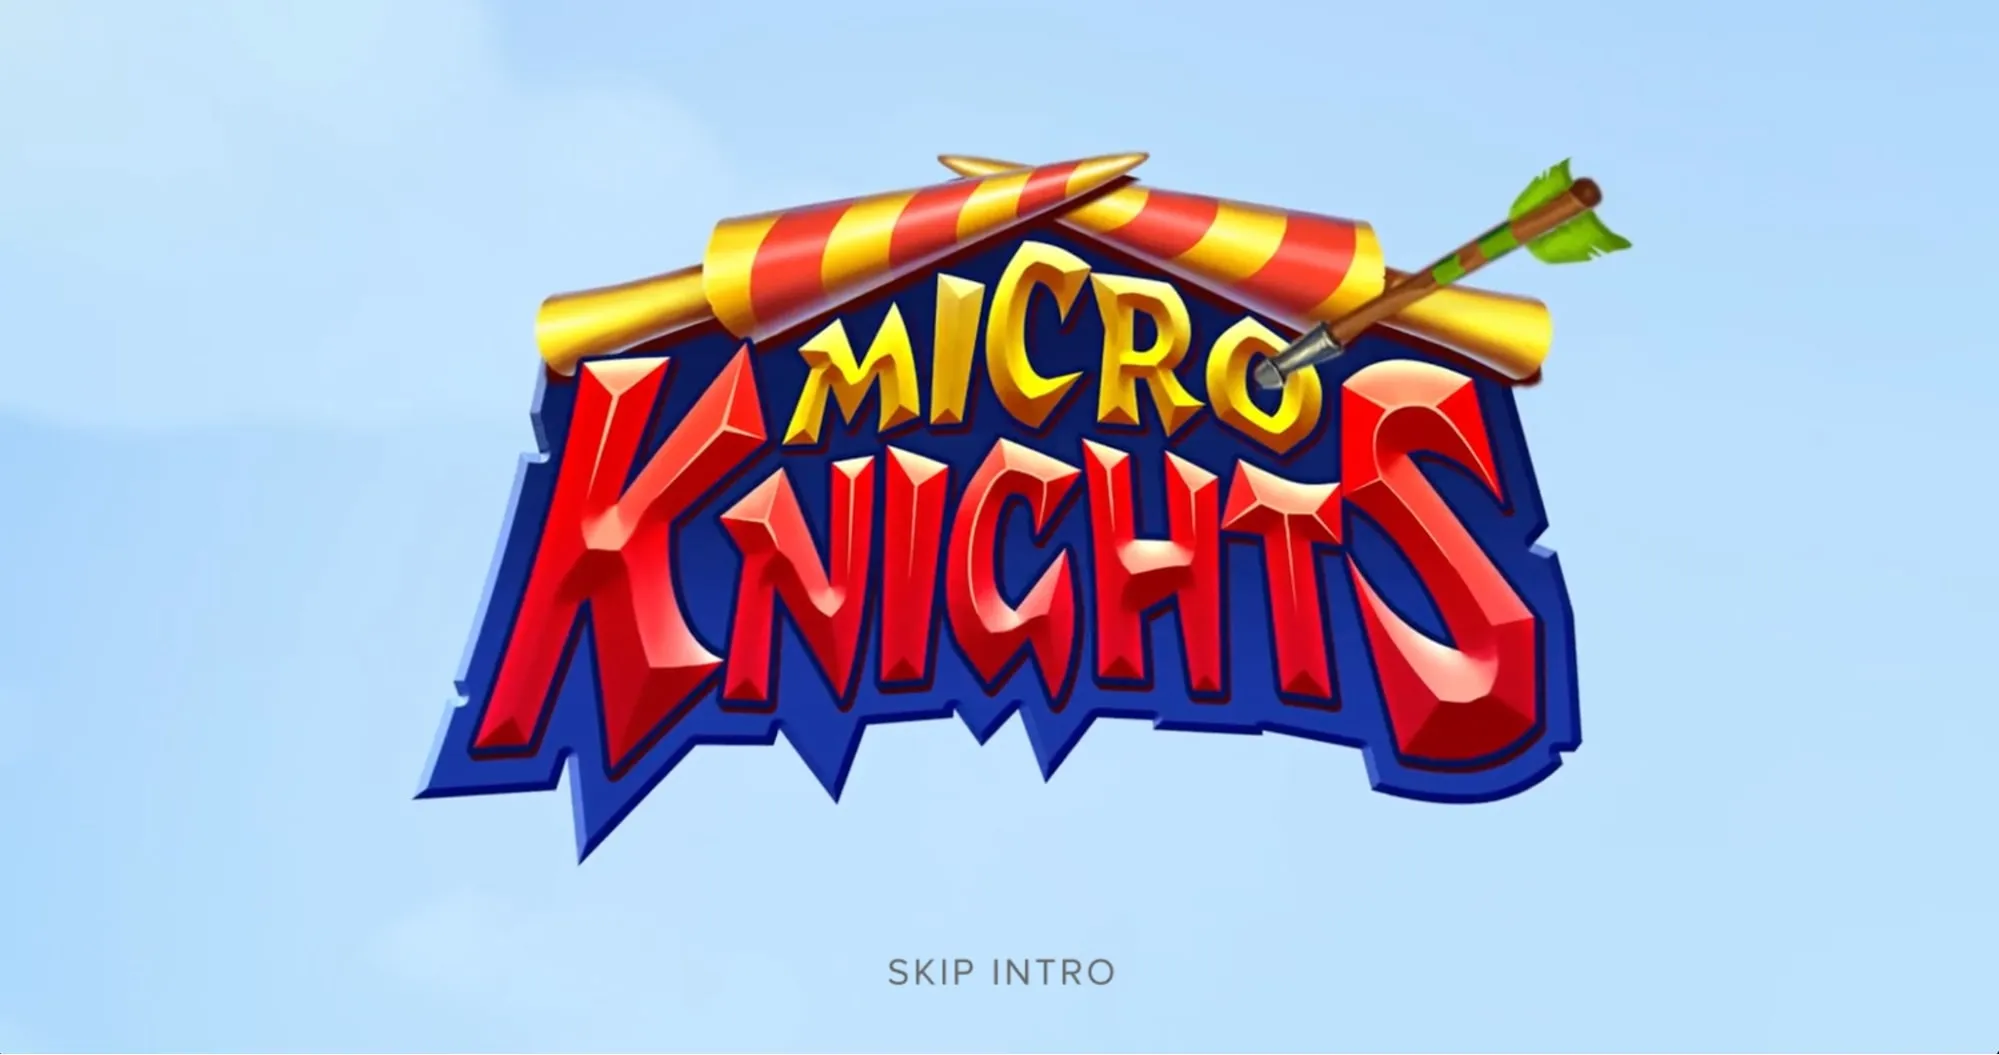 Micro Knights Slot 1.webp